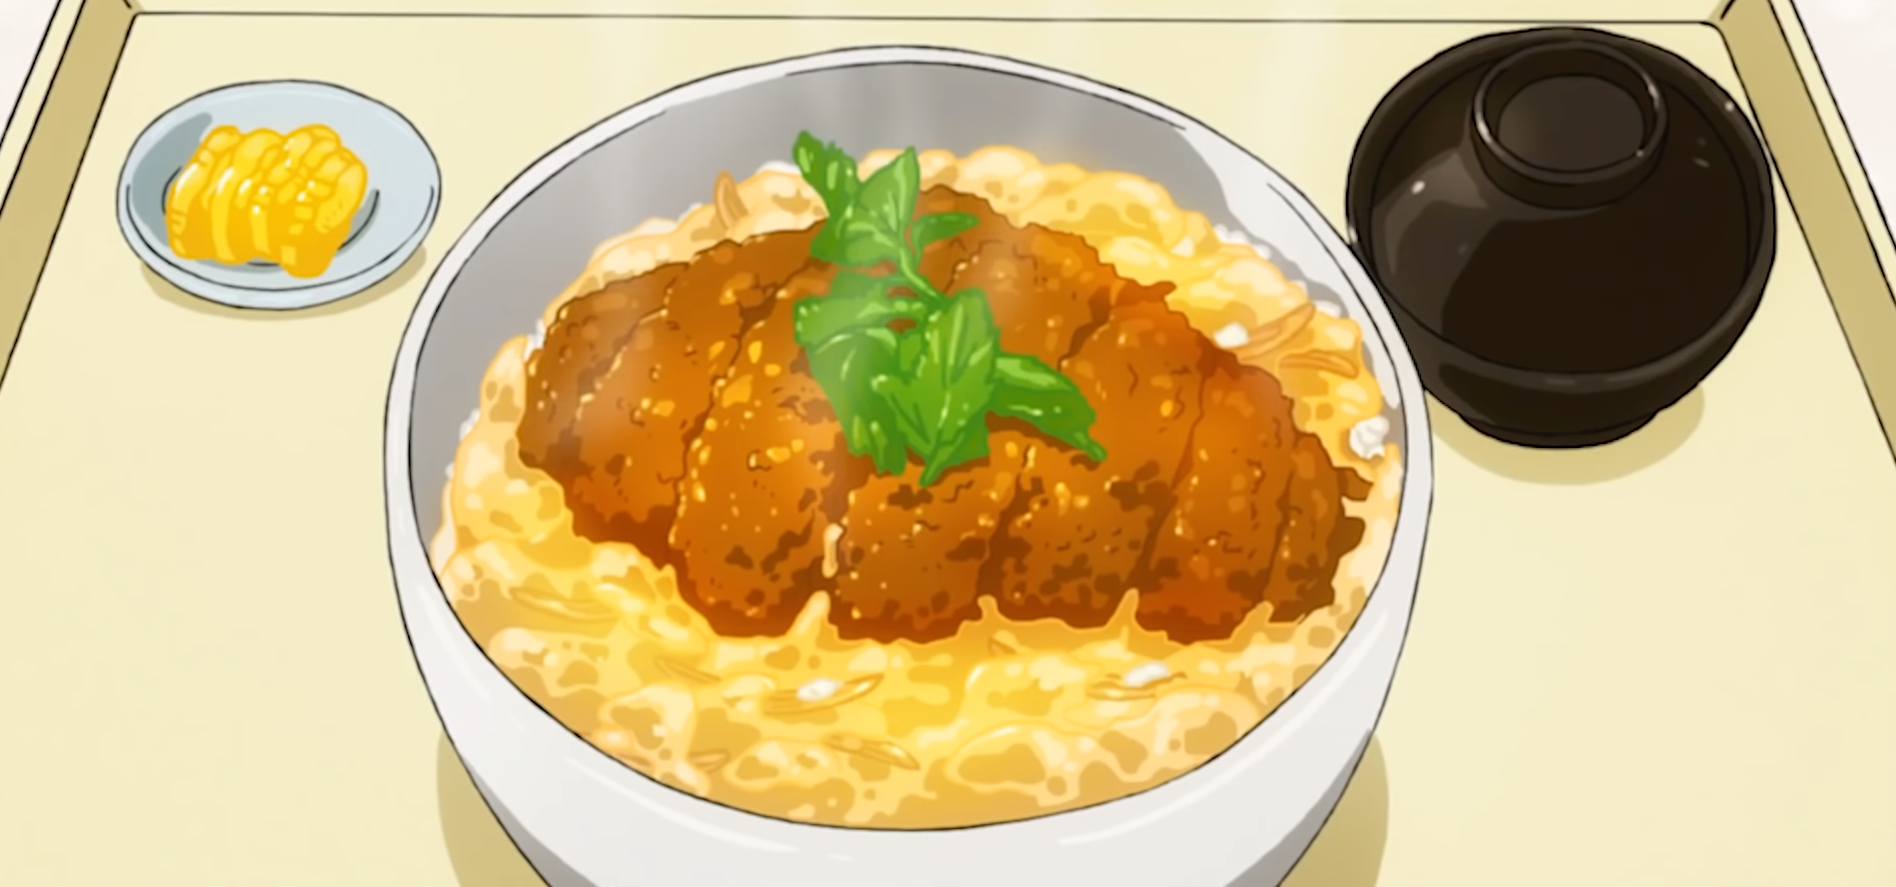 Steam Workshop::Anime Food Compilation